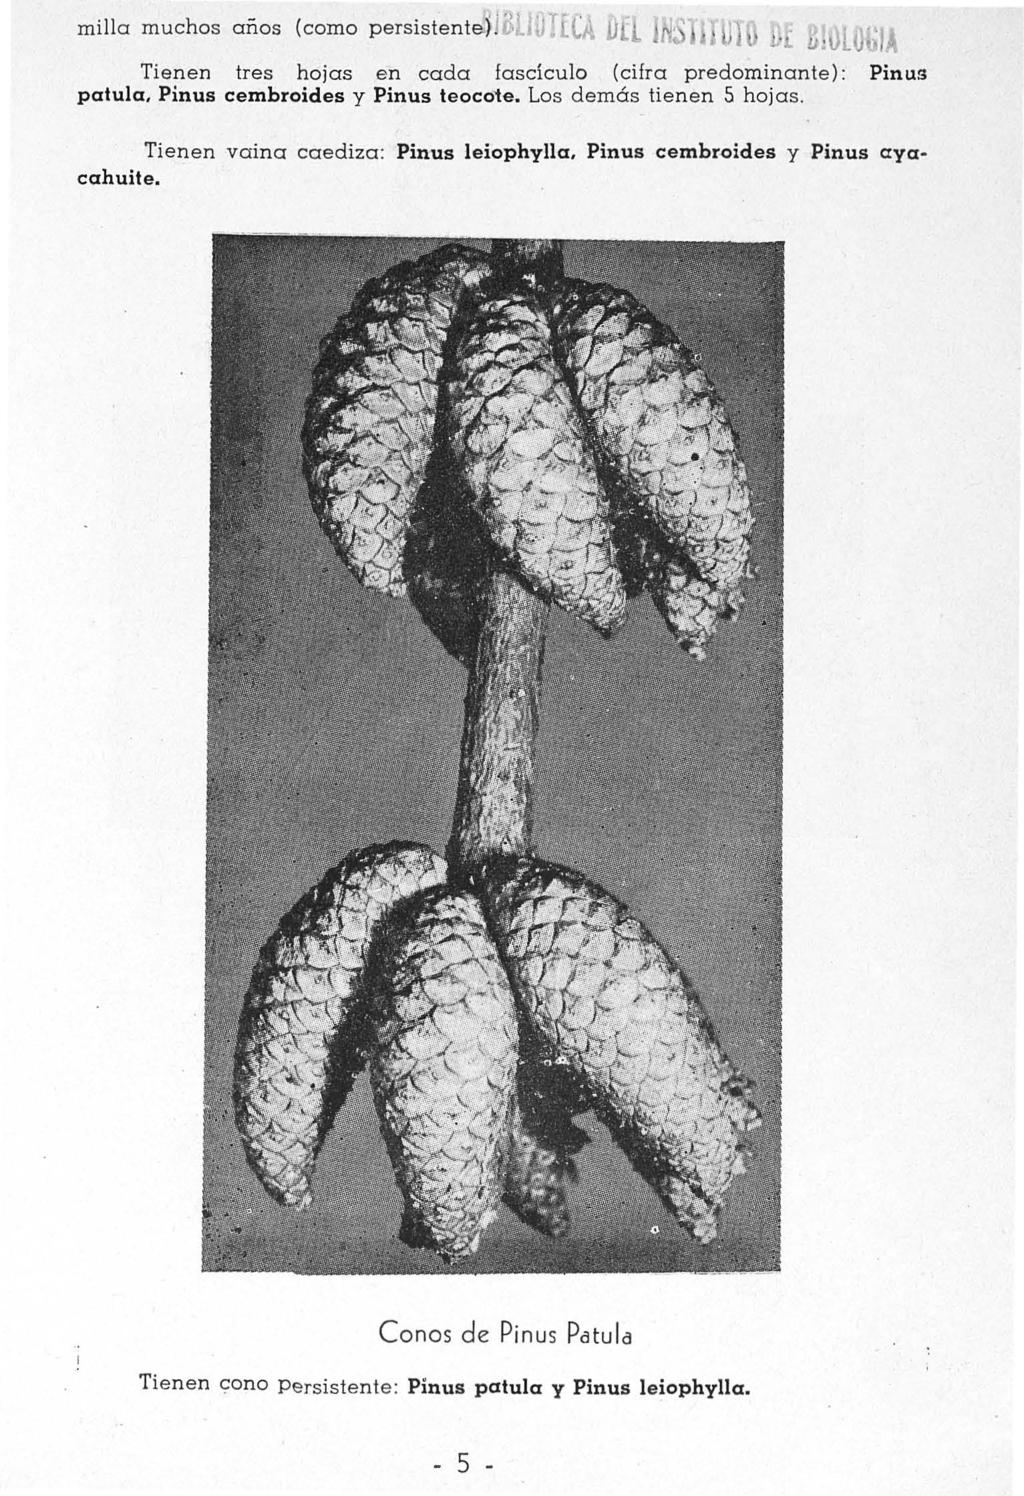 milla muchos anos (como persistentef ouohla Dü Tienen tres hojas en cada fascículo (cifra predominante) : Pinus patula, Pinus cembroides y Pinus teoco1e.